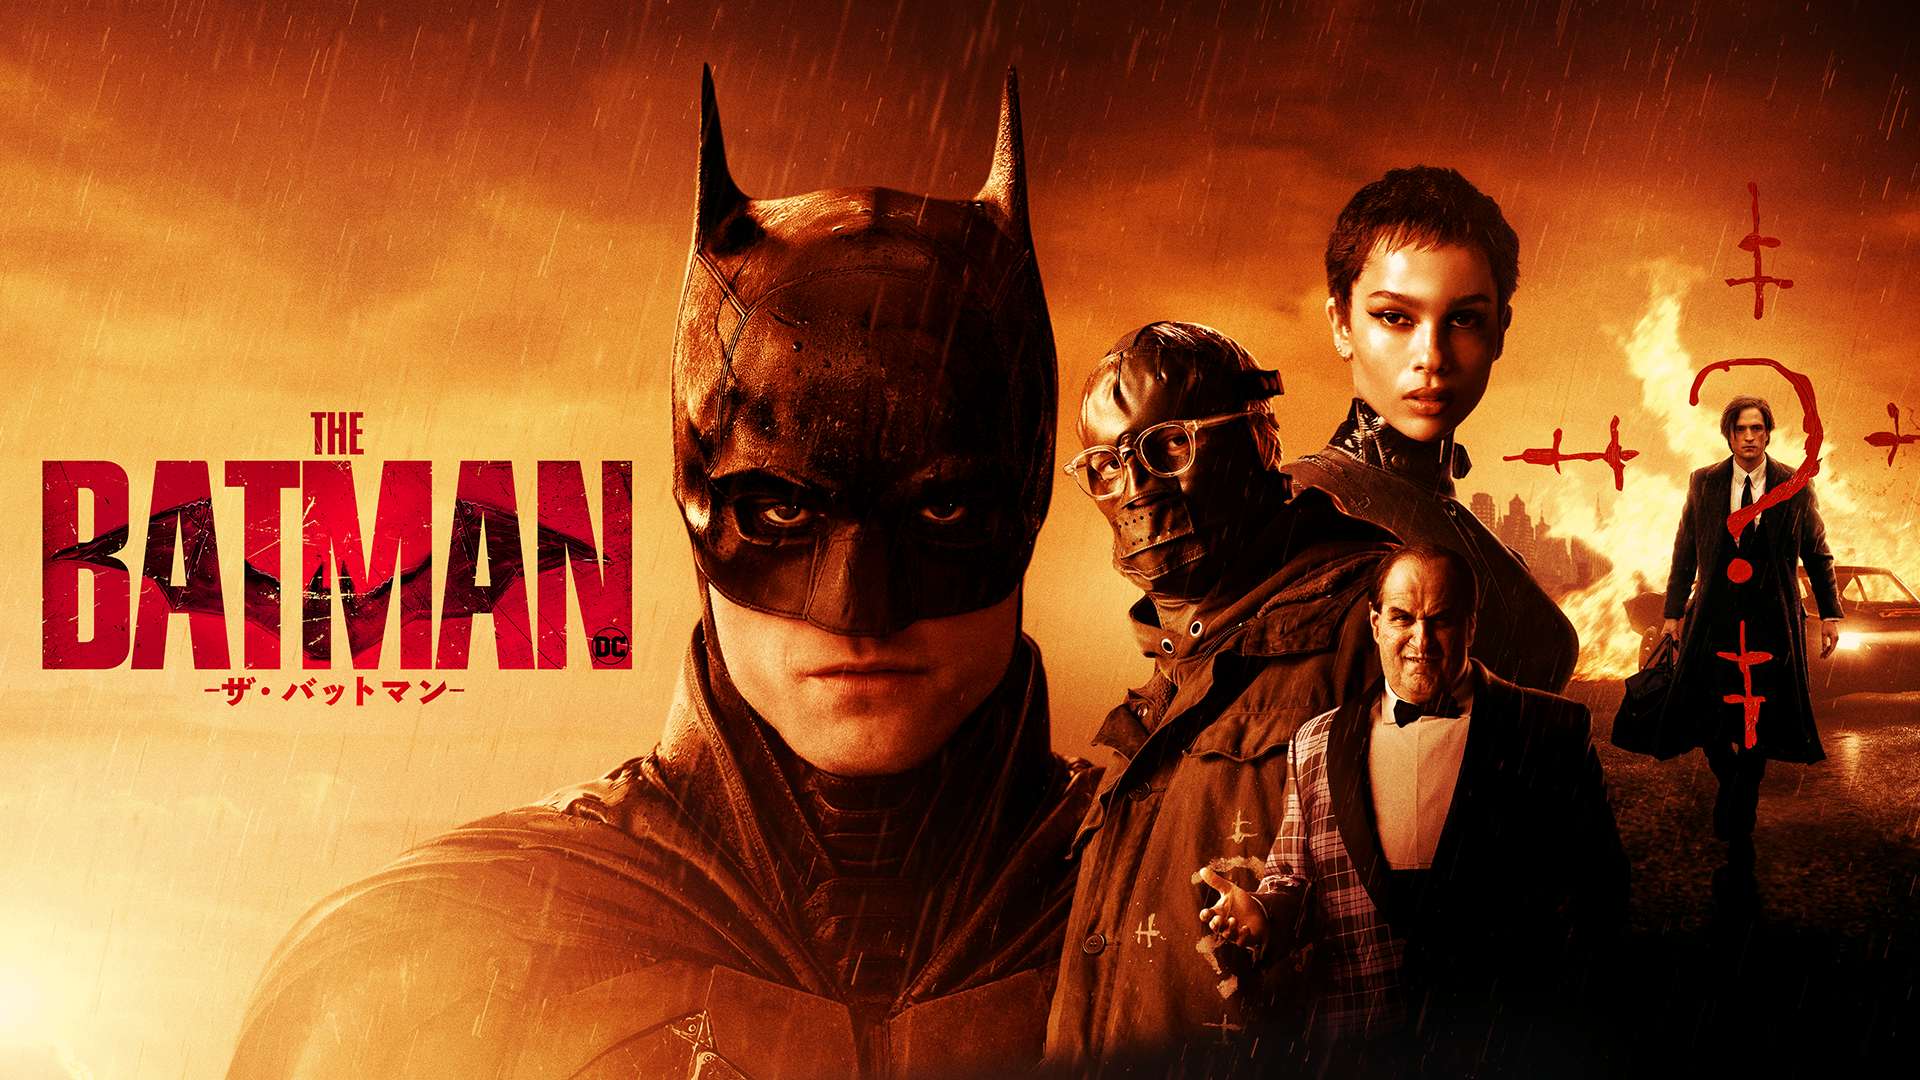 ヒーロー映画の概念を覆す新たなバットマンの物語『THE BATMAN－ザ・バットマン－』を、早くもU-NEXTにてプレミア配信開始！冒頭10分は、会員登録なしでも無料で視聴可能！｜株式会社  U-NEXTのプレスリリース